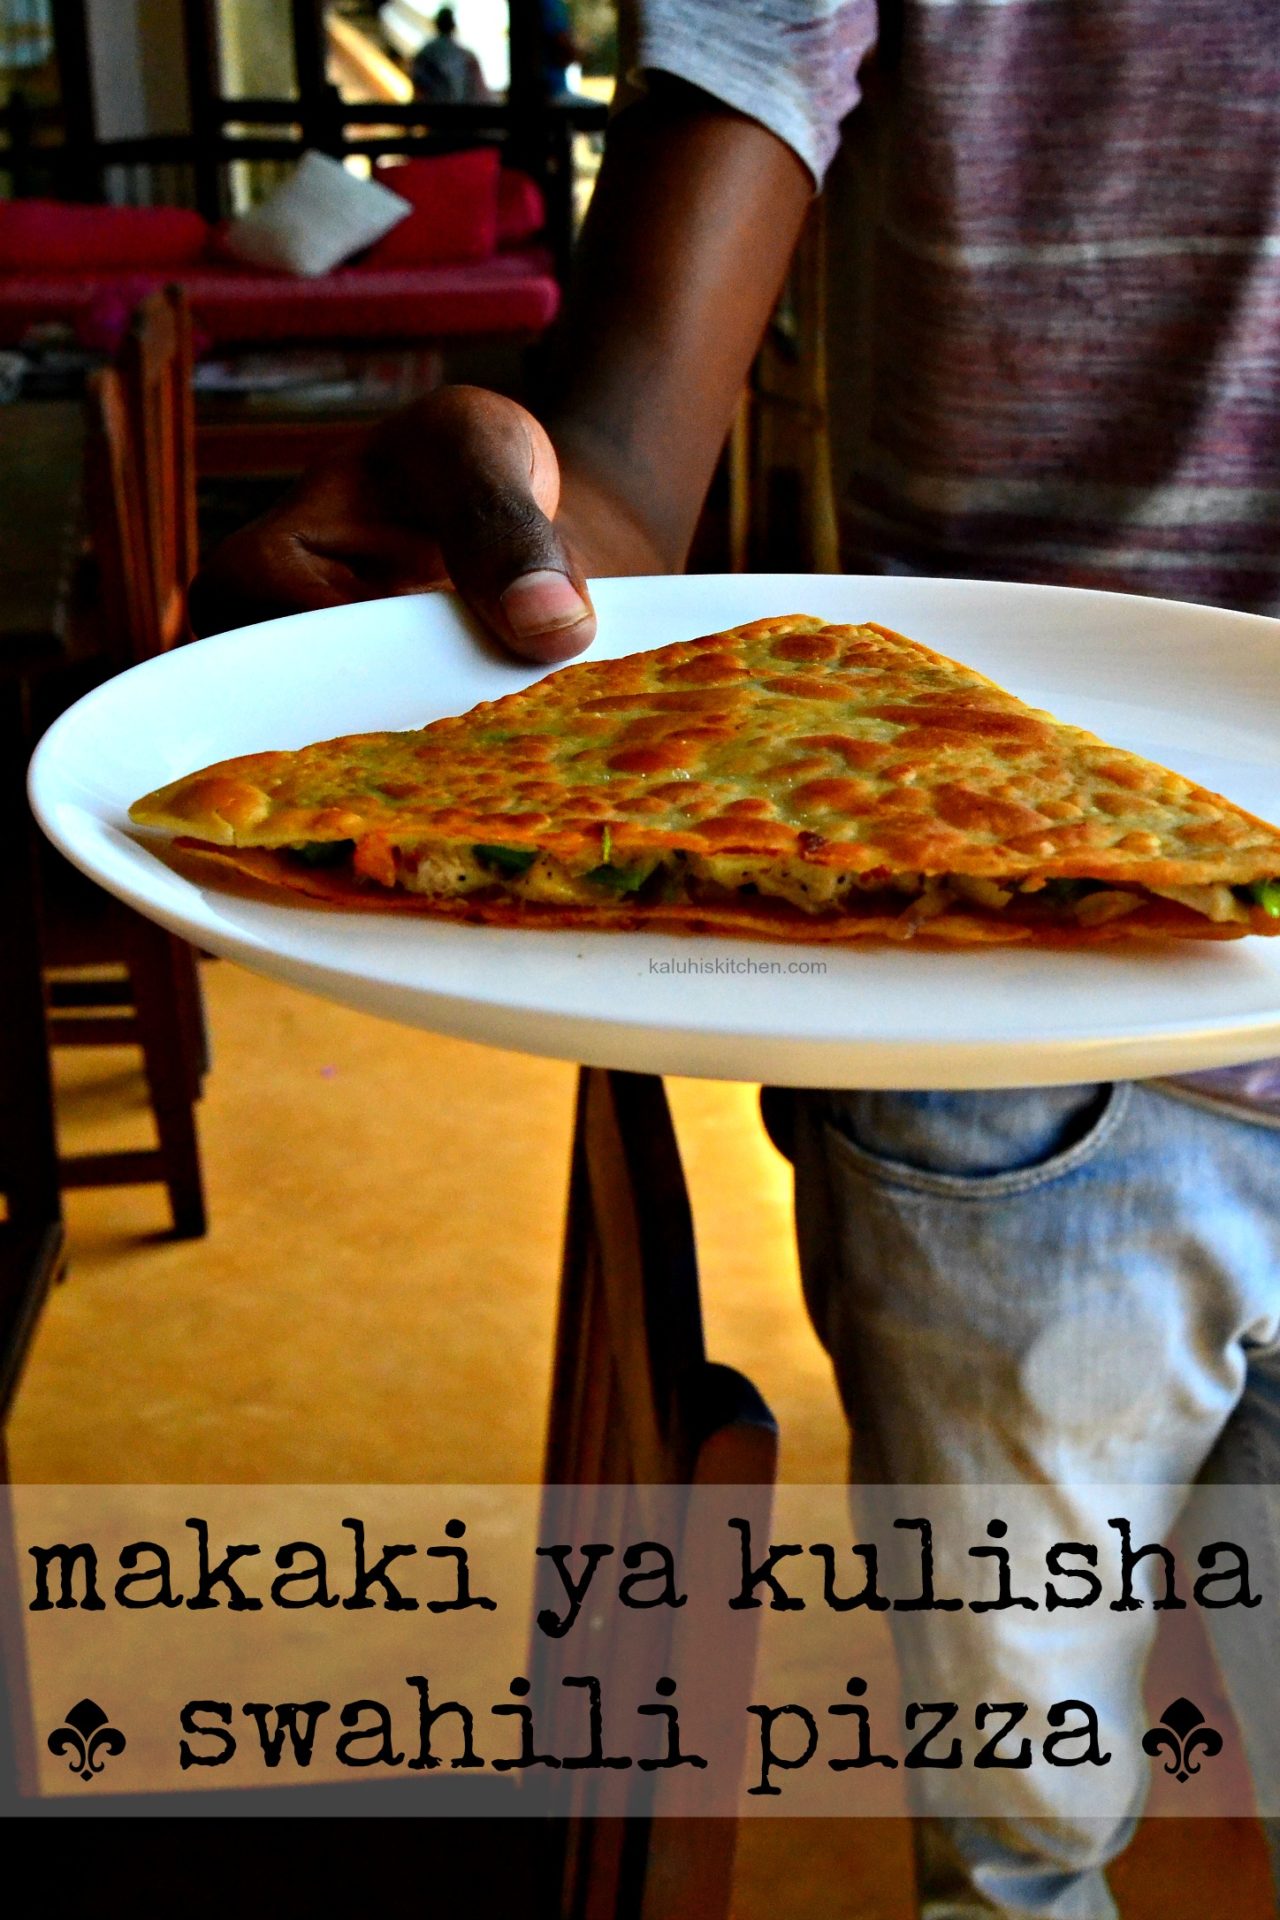 makaki ya kilisha also known as swahili pizza is a common coastal dish served in Lamu_kaluhiskitchen.com